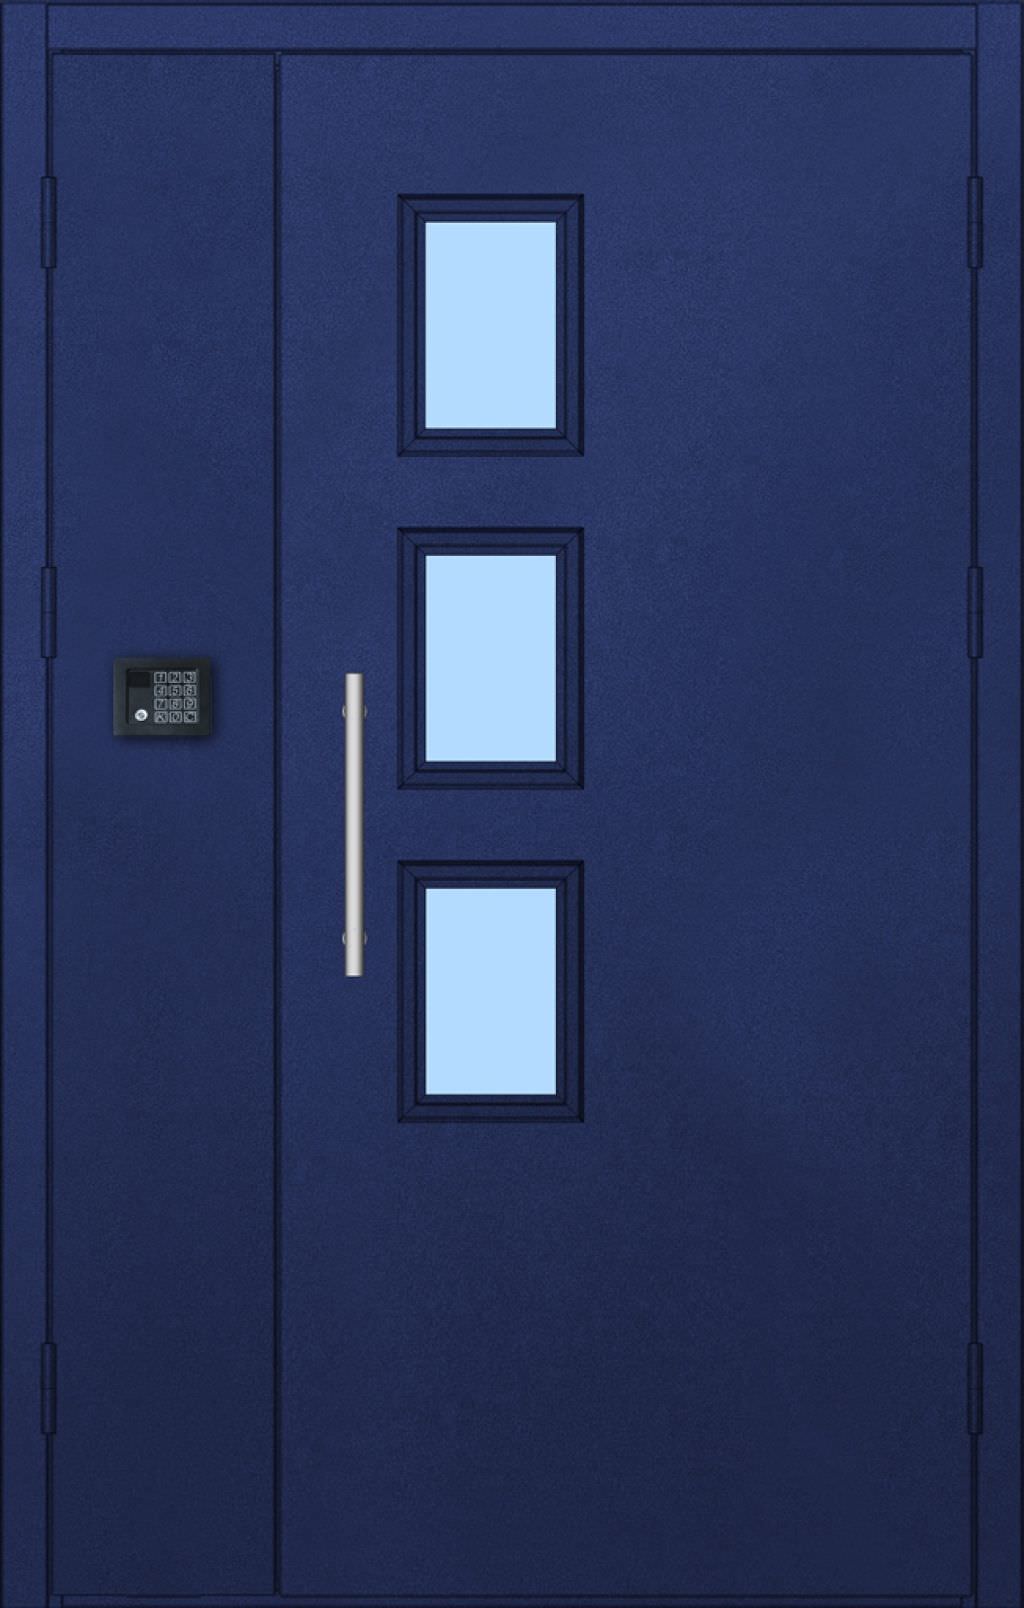 Дверь подъездная (Арт. PD05)